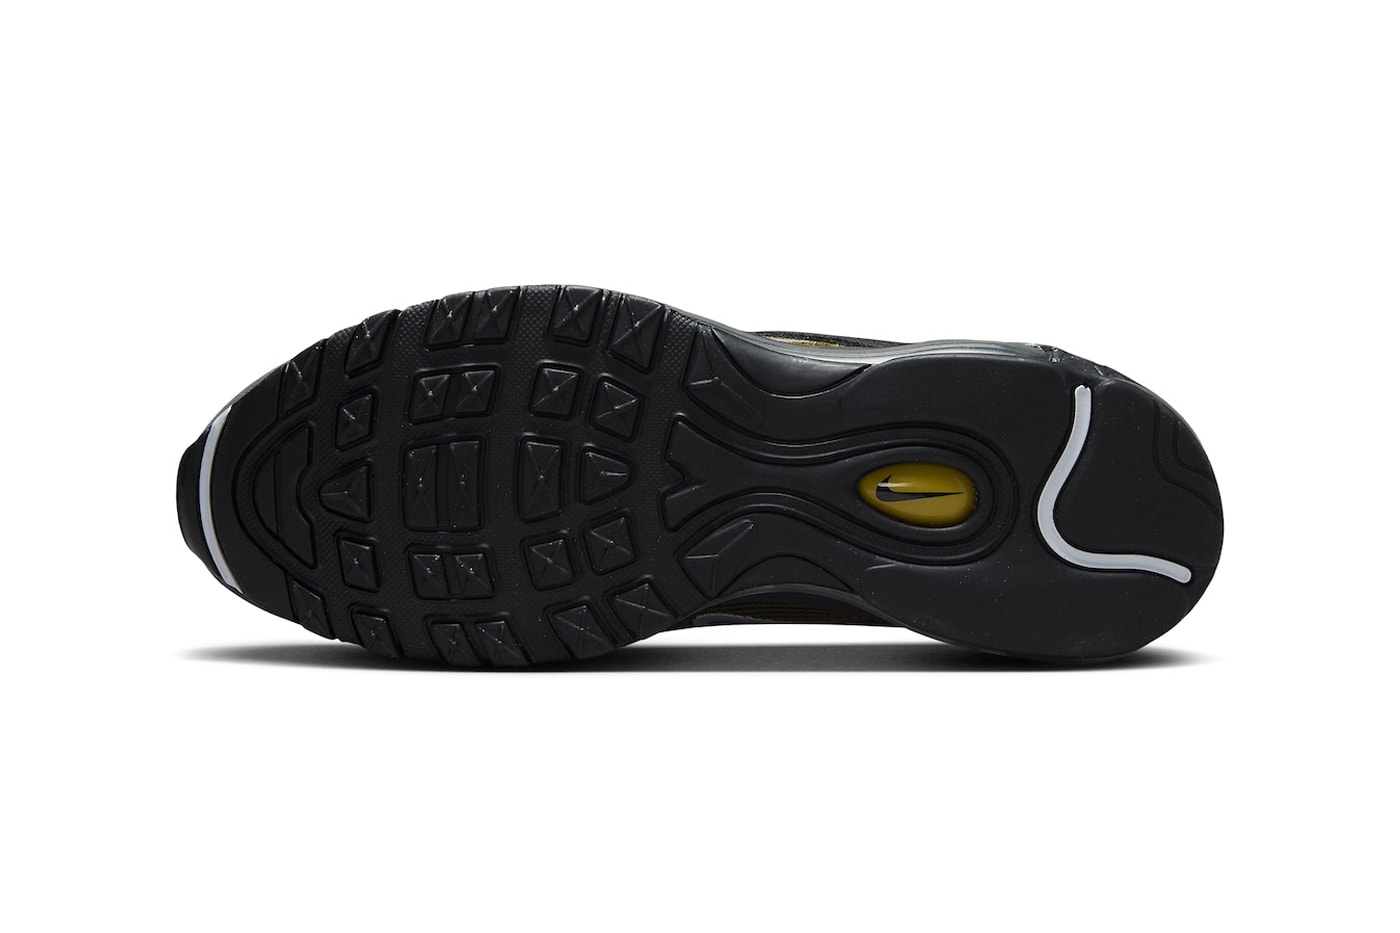 ナイキ エアマックス97からリュクスなカラーリングの新作 ゴールデンベージュが登場 Nike Air Max 97 "Golden Beige" FB9619-200 Release Info Golden Beige/Anthracite-White december 2023 suede mesh leather sports shoes sneakers classic 